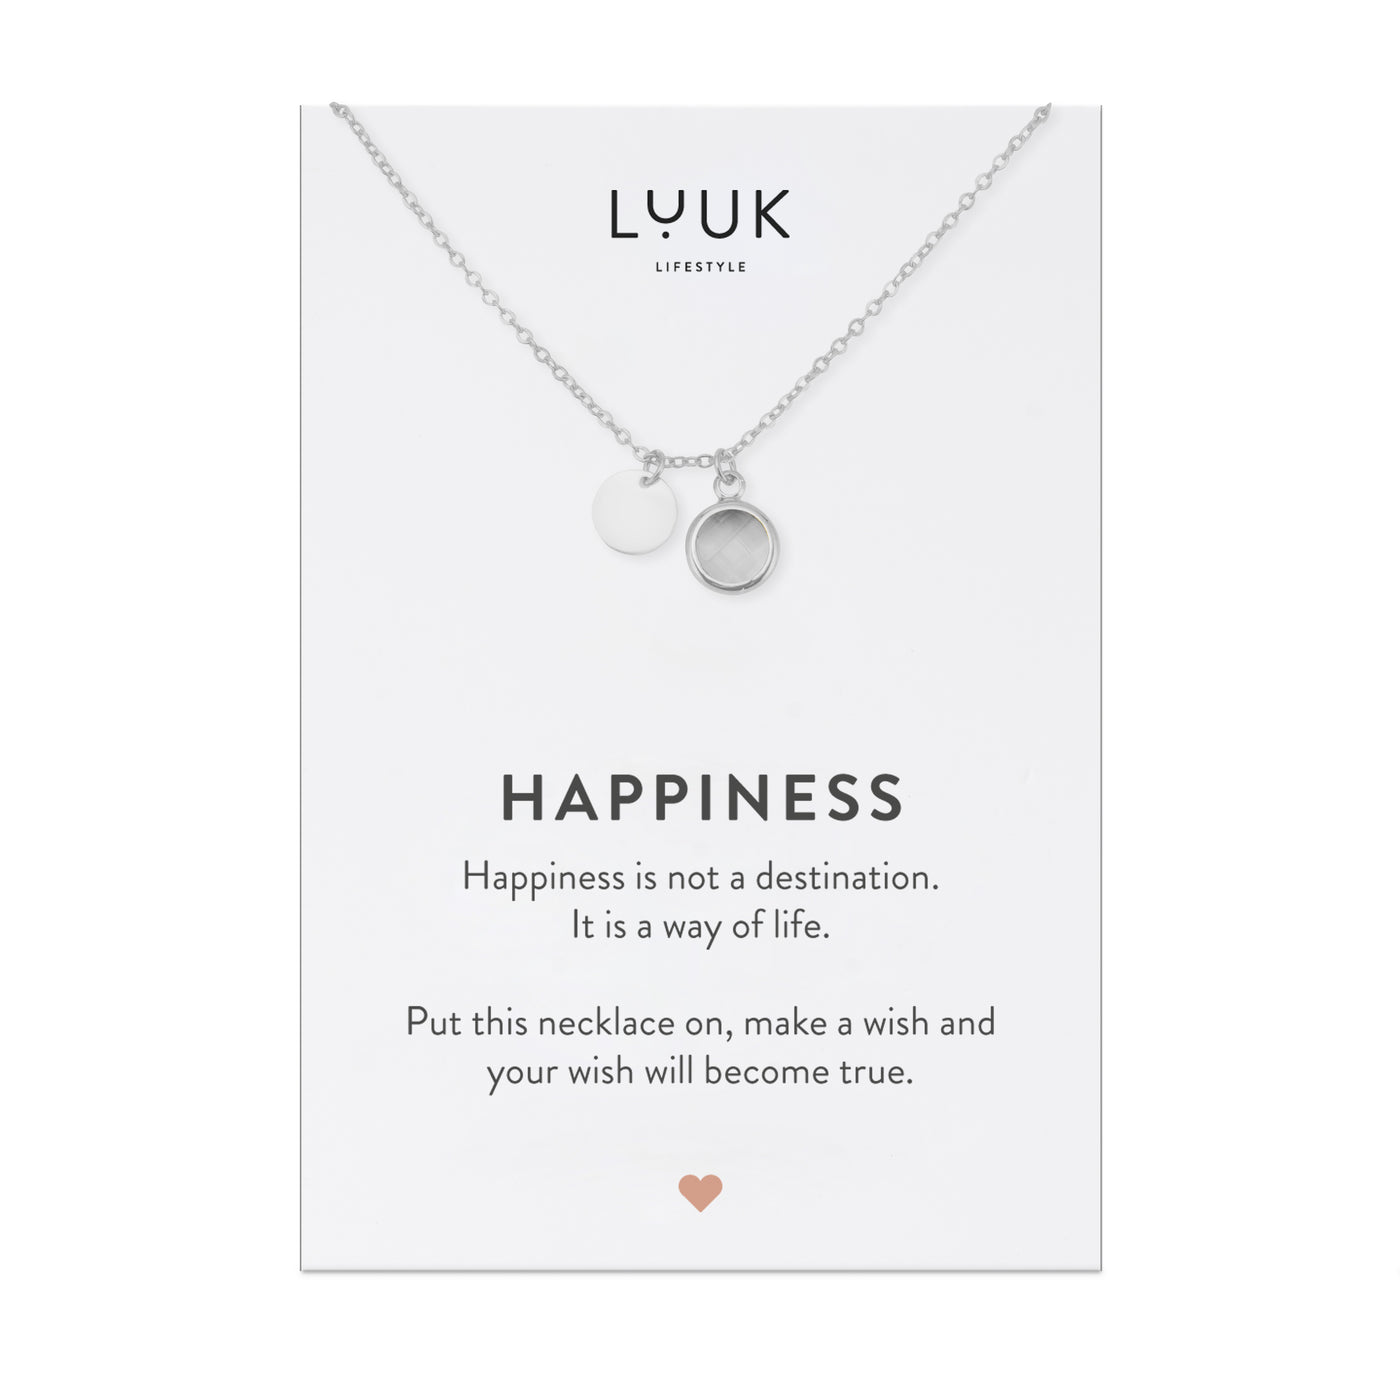 Silberne Halskette mit weißem Kristall Anhänger und silbernem Plättchen Anhänger auf Happiness Spruchkarte von Luuk Lifestyle